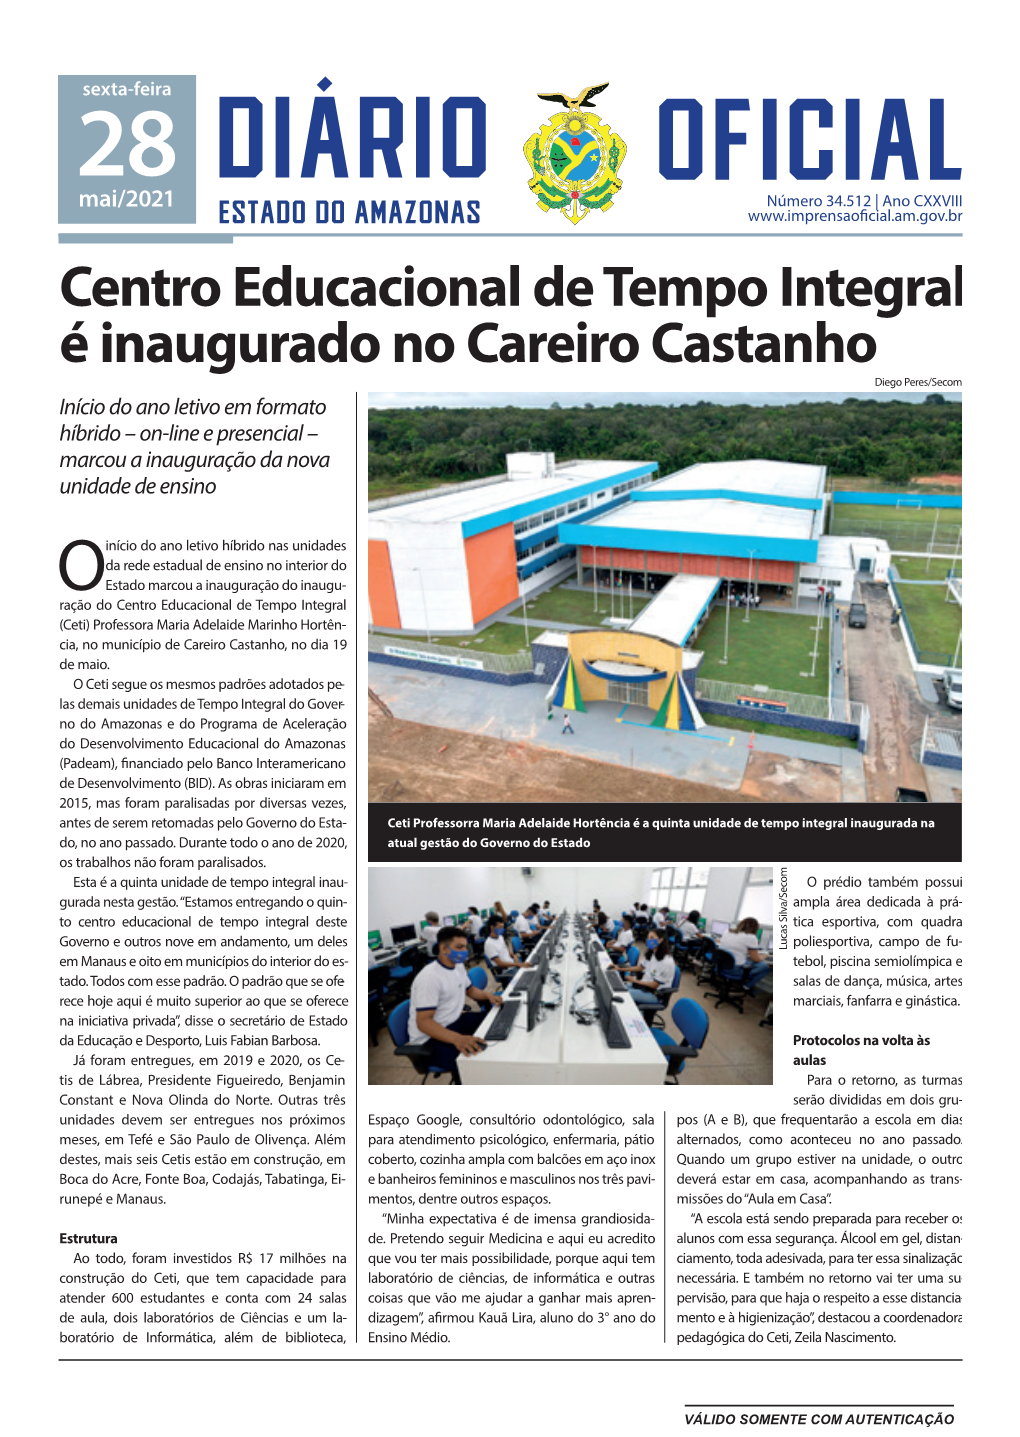 Centro Educacional De Tempo Integral É Inaugurado No Careiro